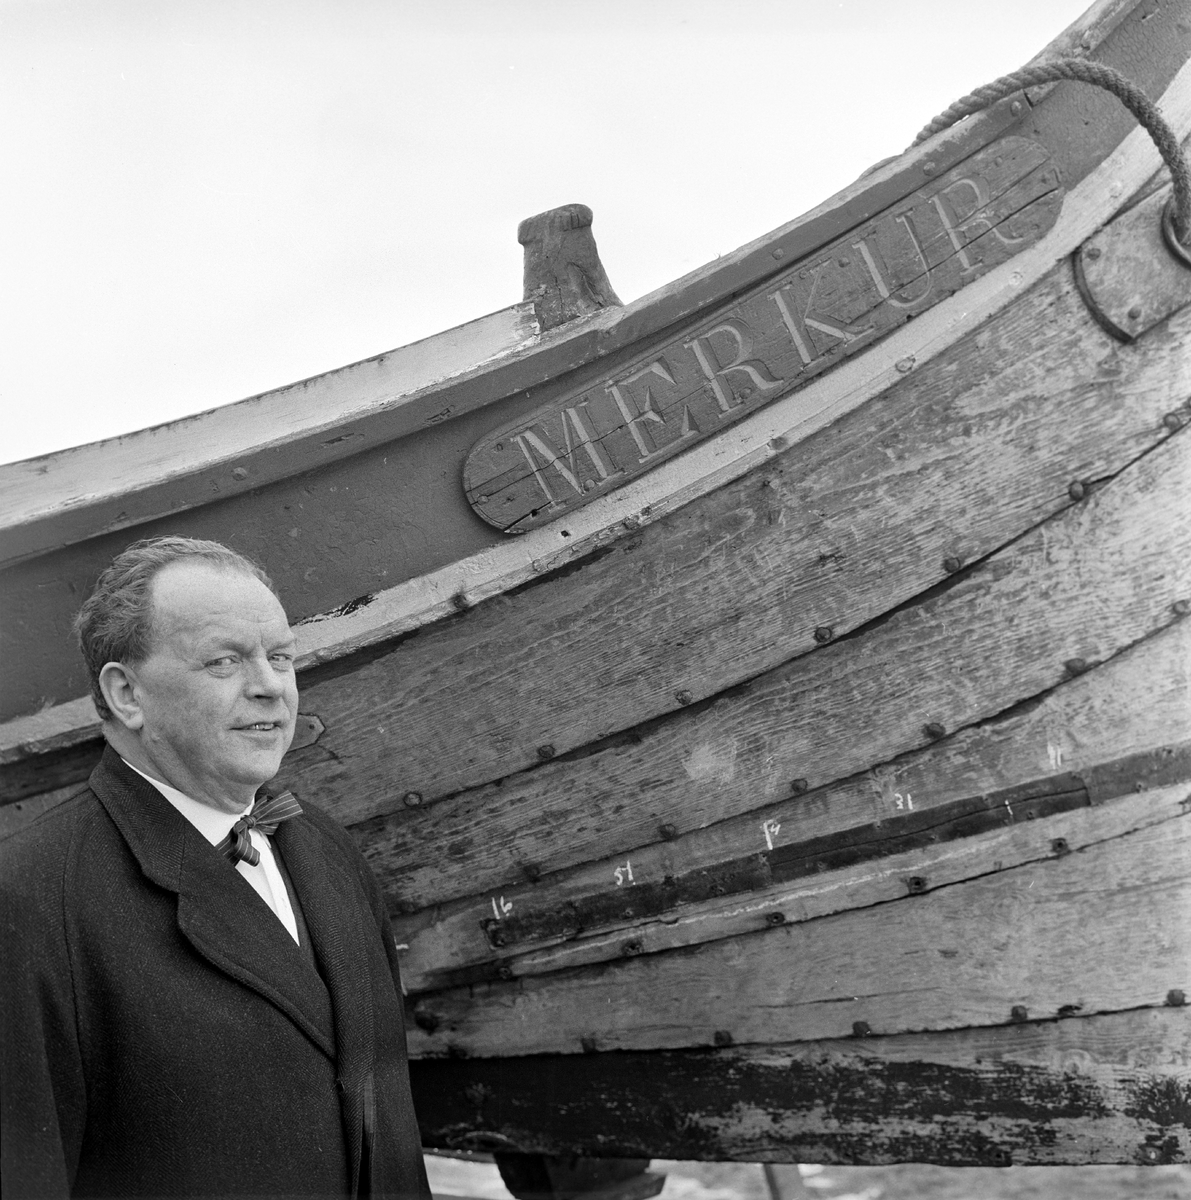 Serie. Fhv. havnefogd i Tromsø, O.B. Norvik, høvedsmann på "Merkur". Fotografert 5. juni 1963.